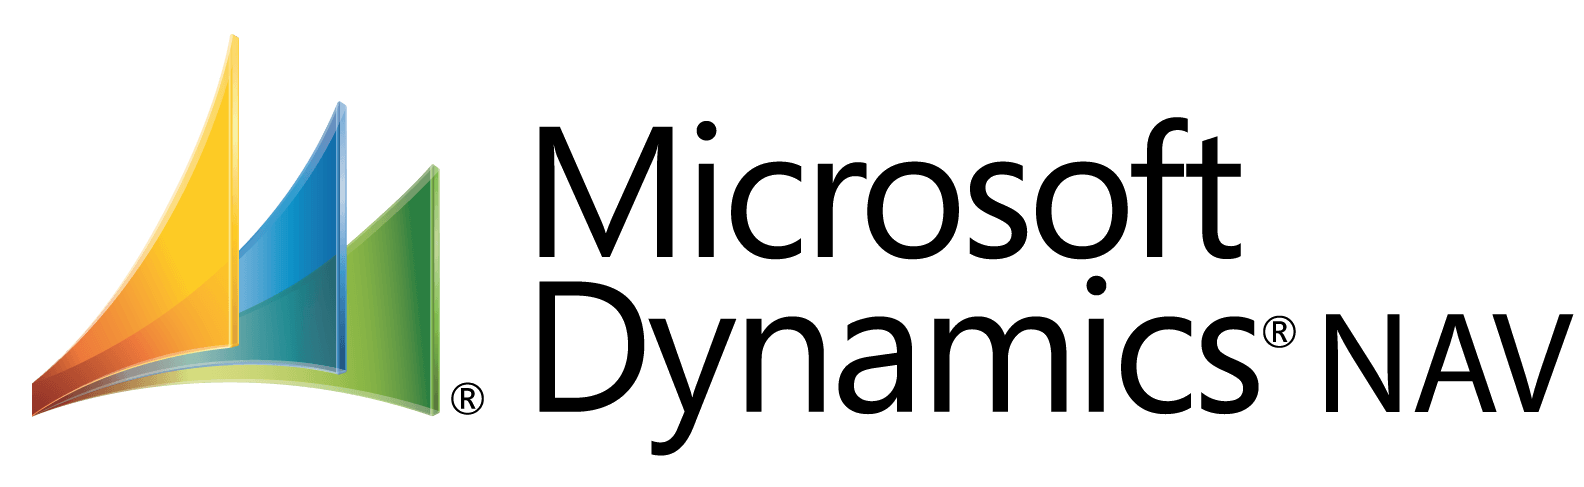 Microsoft Dynamics NAV logotyp